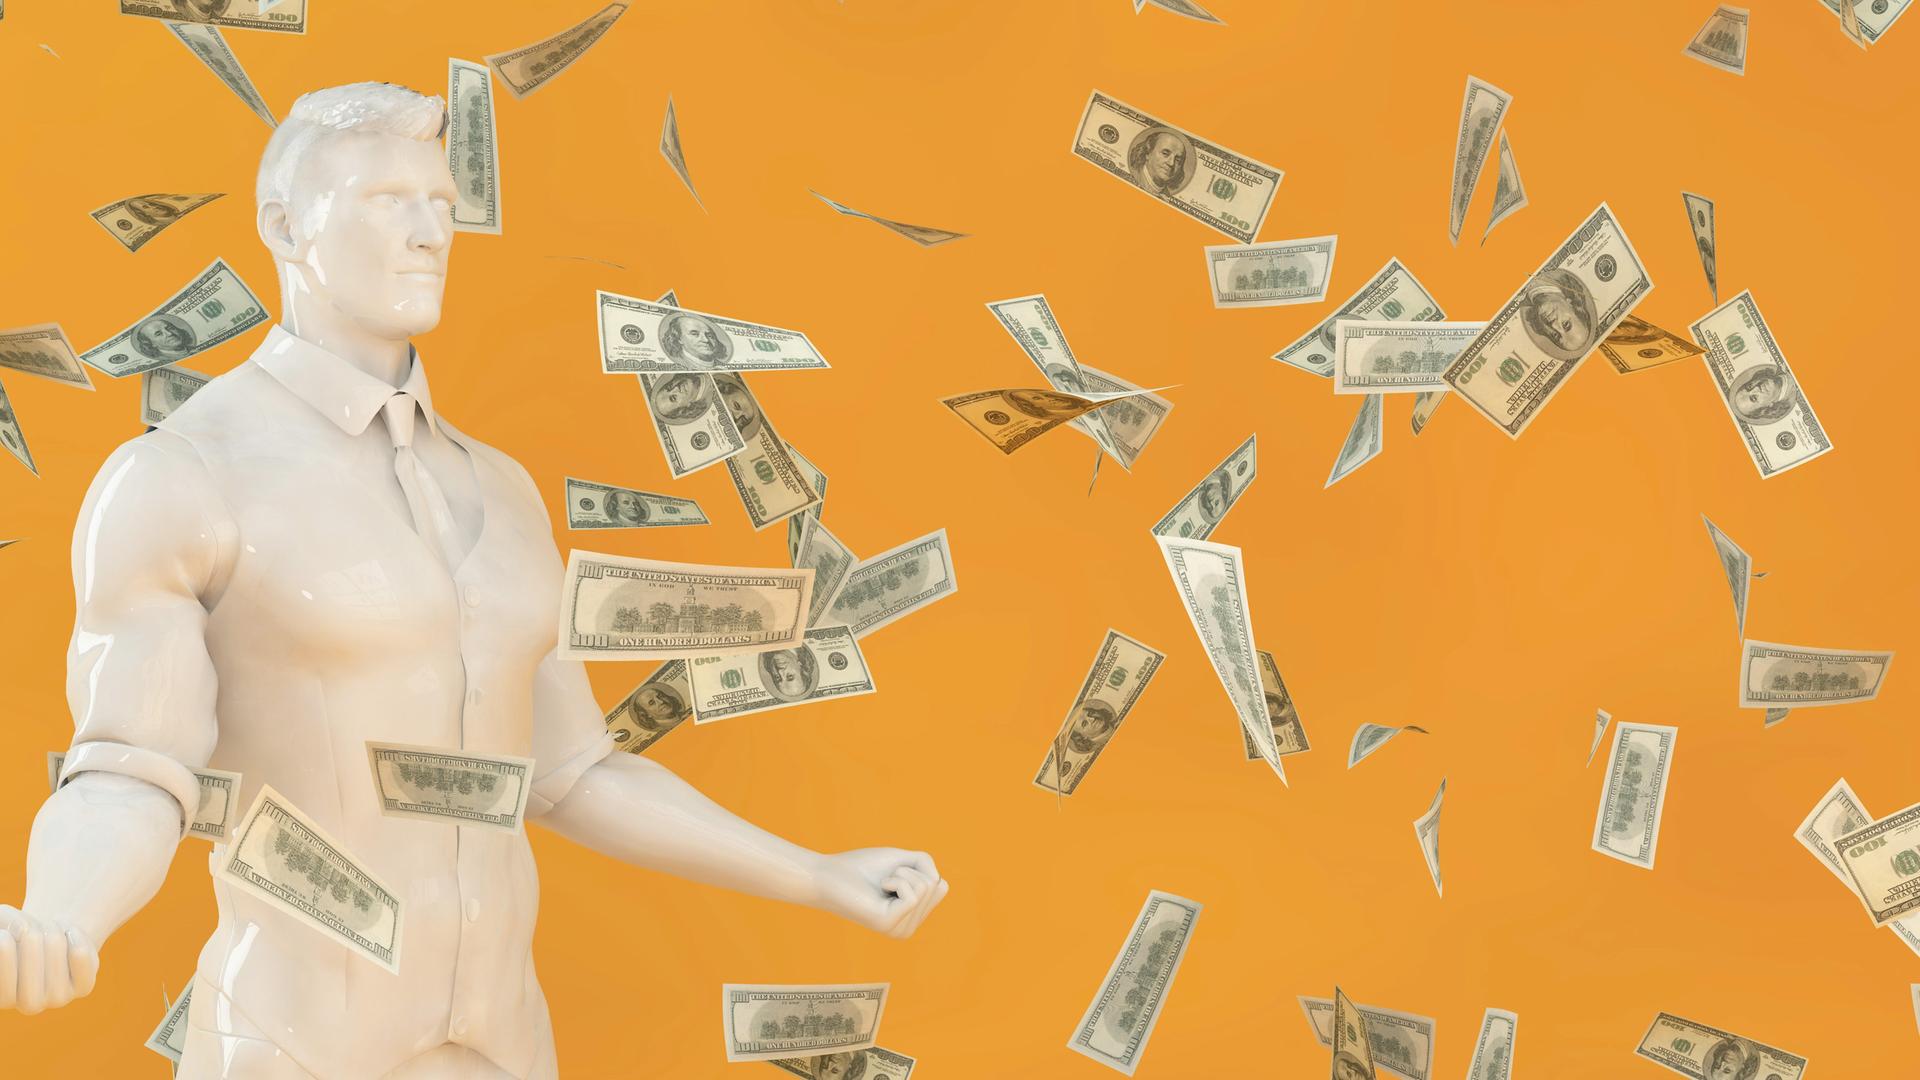 Illustration eines Mannes, der mit seinen Muskeln angibt während Geldscheine vom Himmel fallen.